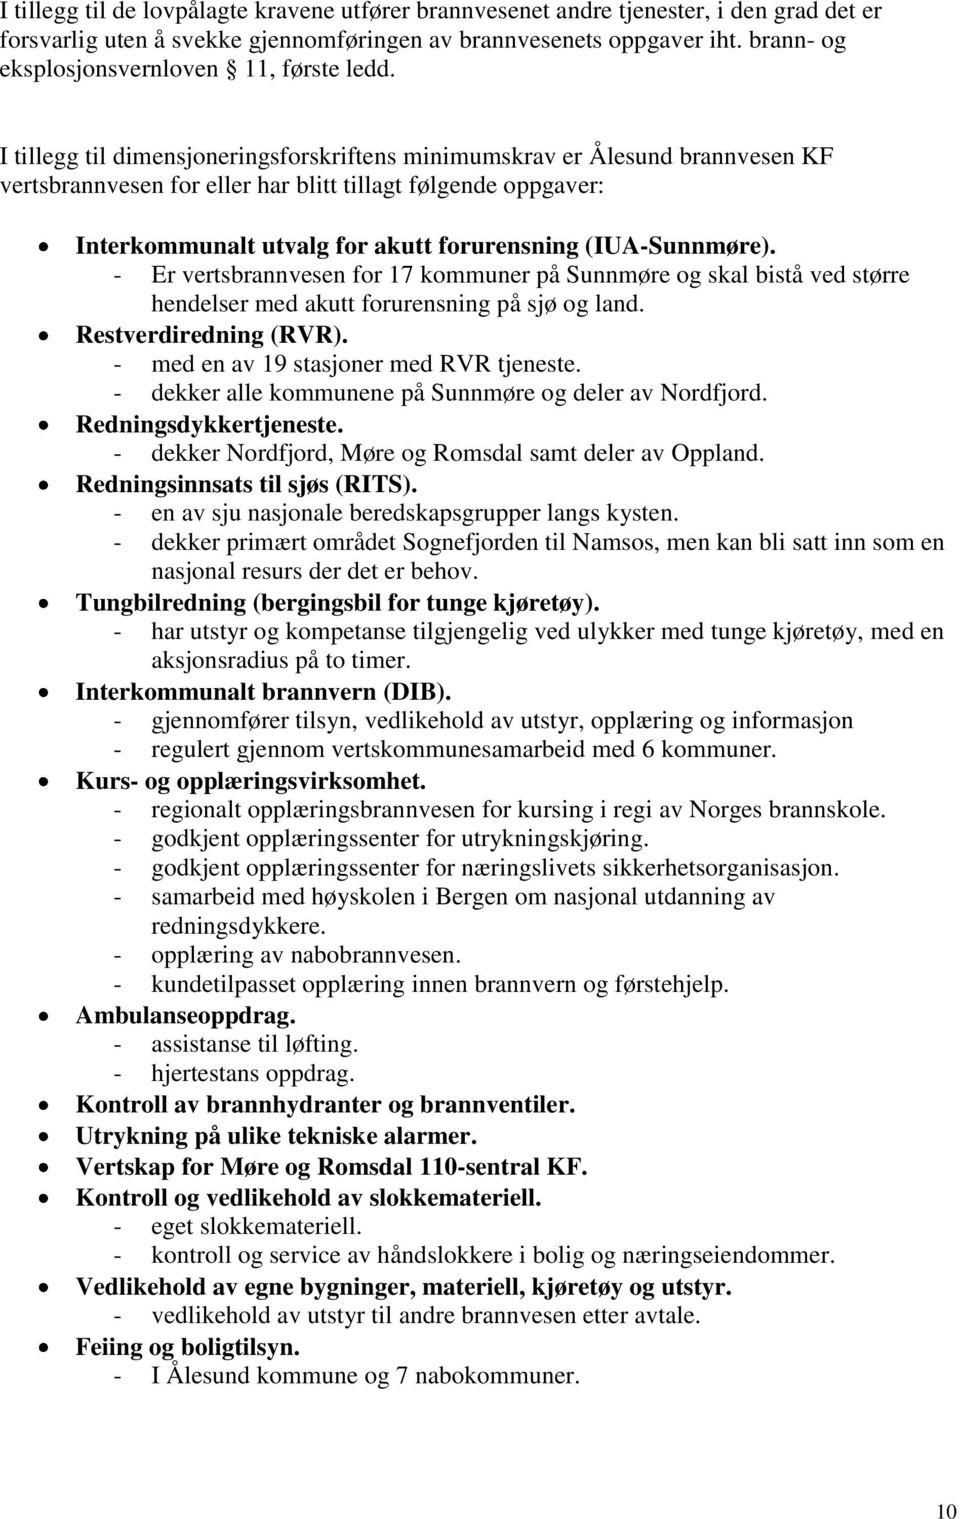 I tillegg til dimensjoneringsforskriftens minimumskrav er Ålesund brannvesen KF vertsbrannvesen for eller har blitt tillagt følgende oppgaver: Interkommunalt utvalg for akutt forurensning